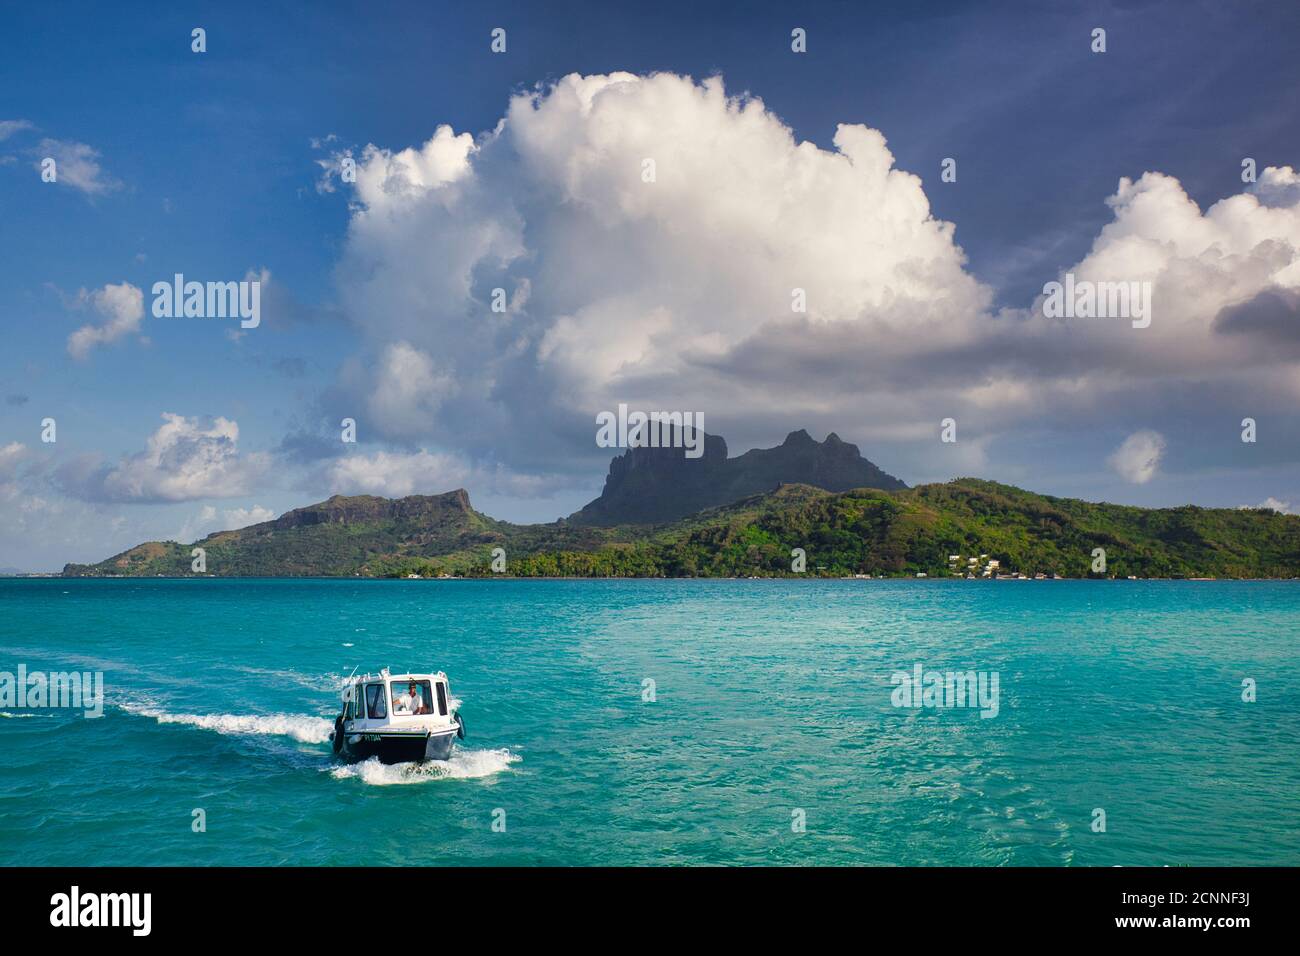 Vue sur la mer avec petit bateau en premier plan, de l'île Bora Bora avec le Mont Otemanu au centre avec ciel bleu et nuage blanc, Polynésie française Banque D'Images